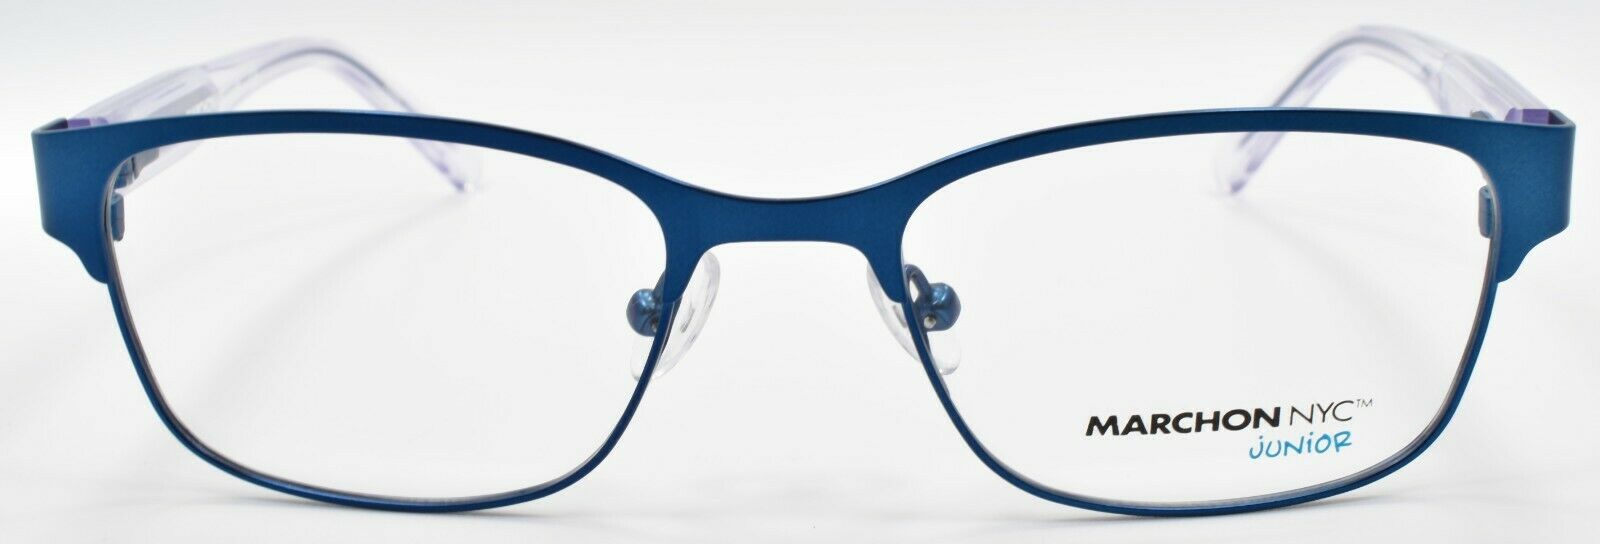 2-Marchon Junior M-7000 320 Kids Girls Eyeglasses Frames 47-17-130 Teal-886895402217-IKSpecs